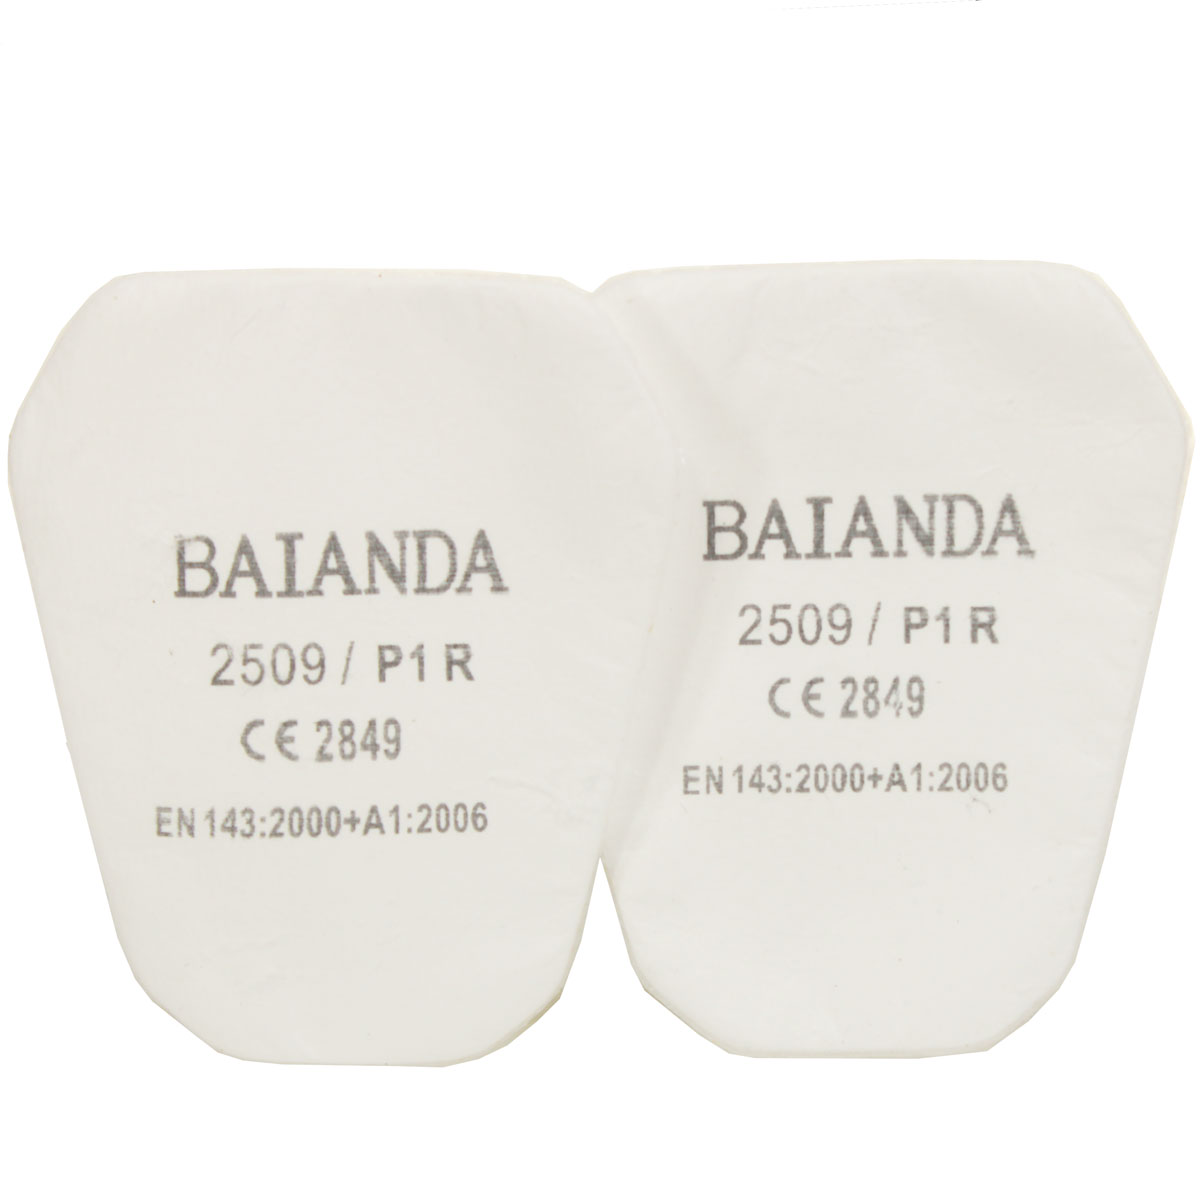 Комплект противоаэрозольных фильтров (предфильтров) BAIANDA 2509, класс P1R, 10 шт/уп держатели feq01 для противоаэрозольных фильтров baianda 1201 1203 2501 2502 2 шт уп